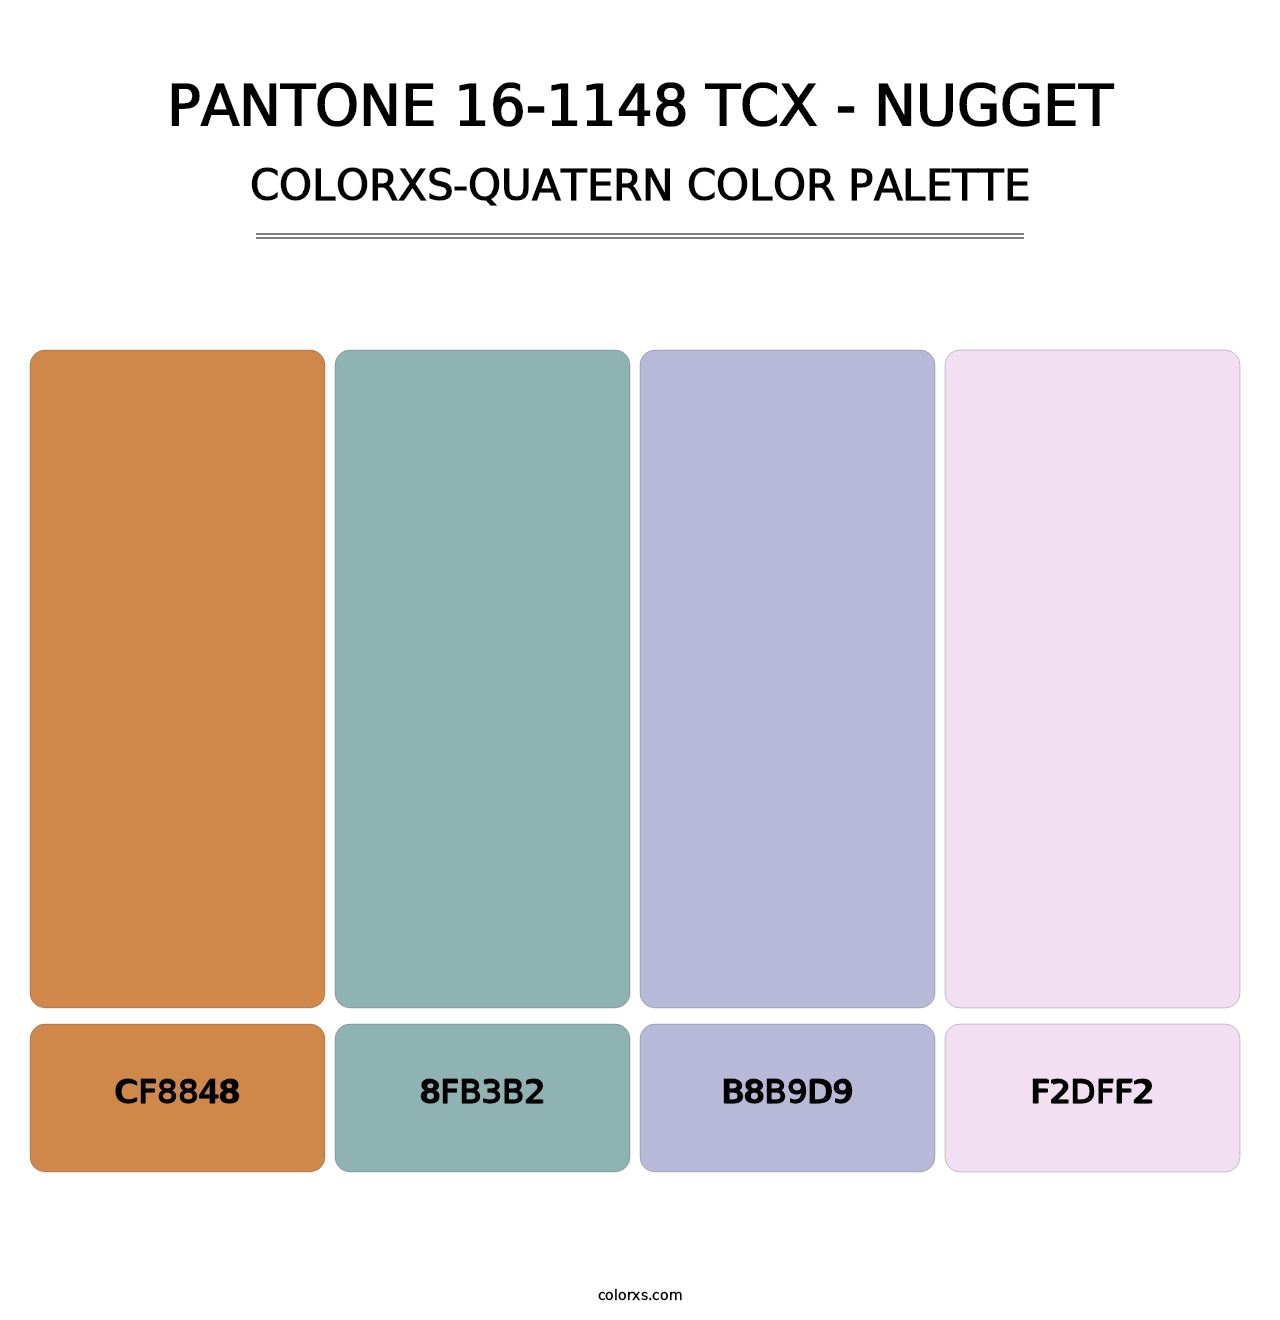 PANTONE 16-1148 TCX - Nugget - Colorxs Quatern Palette